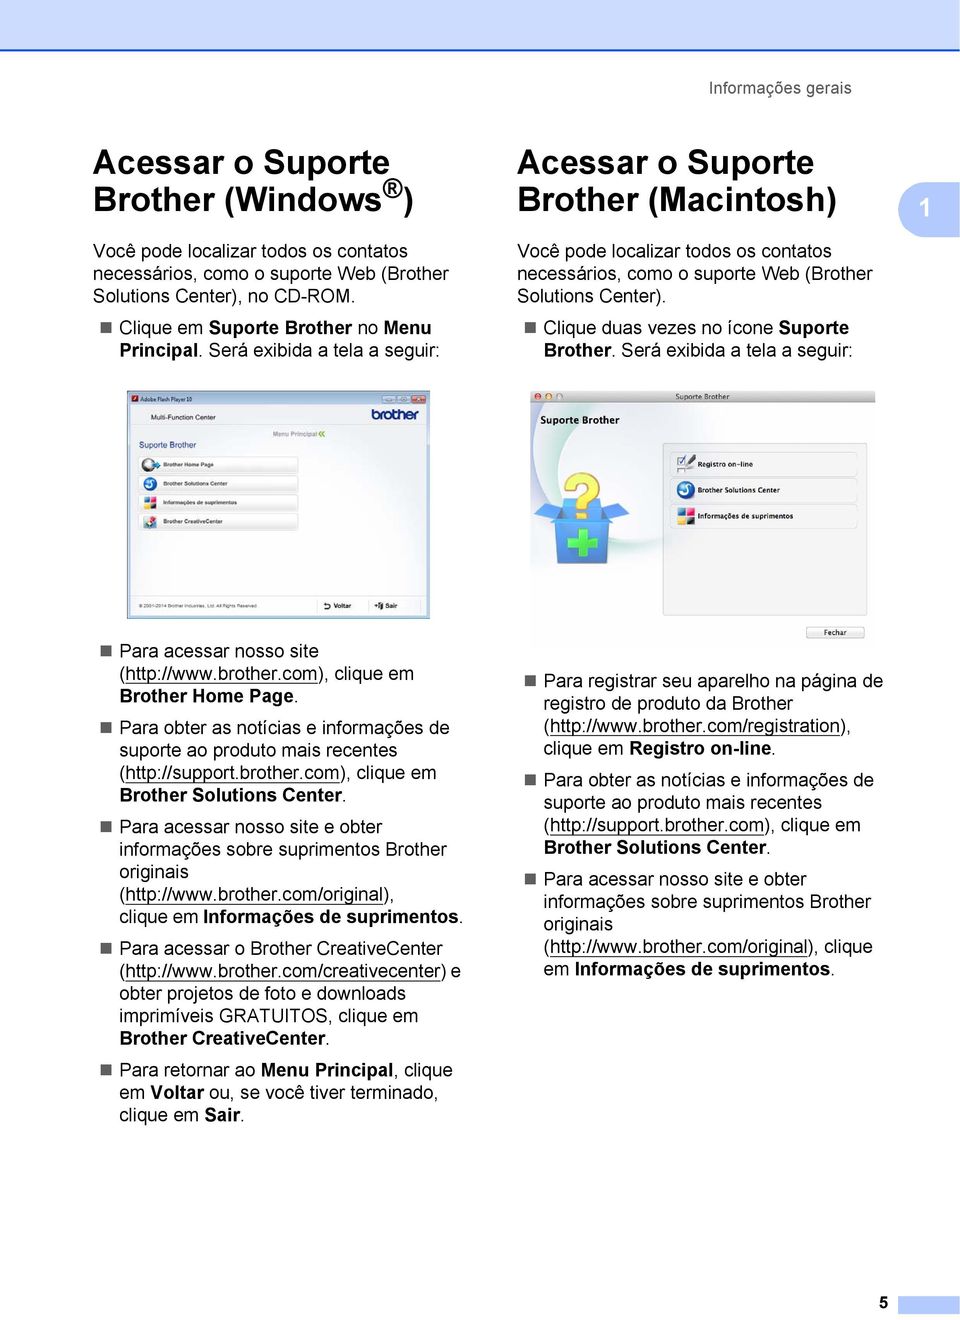 Será exibida a tela a seguir: Acessar o Suporte Brother (Macintosh) 1 Você pode localizar todos os contatos necessários, como o suporte Web (Brother Solutions Center).